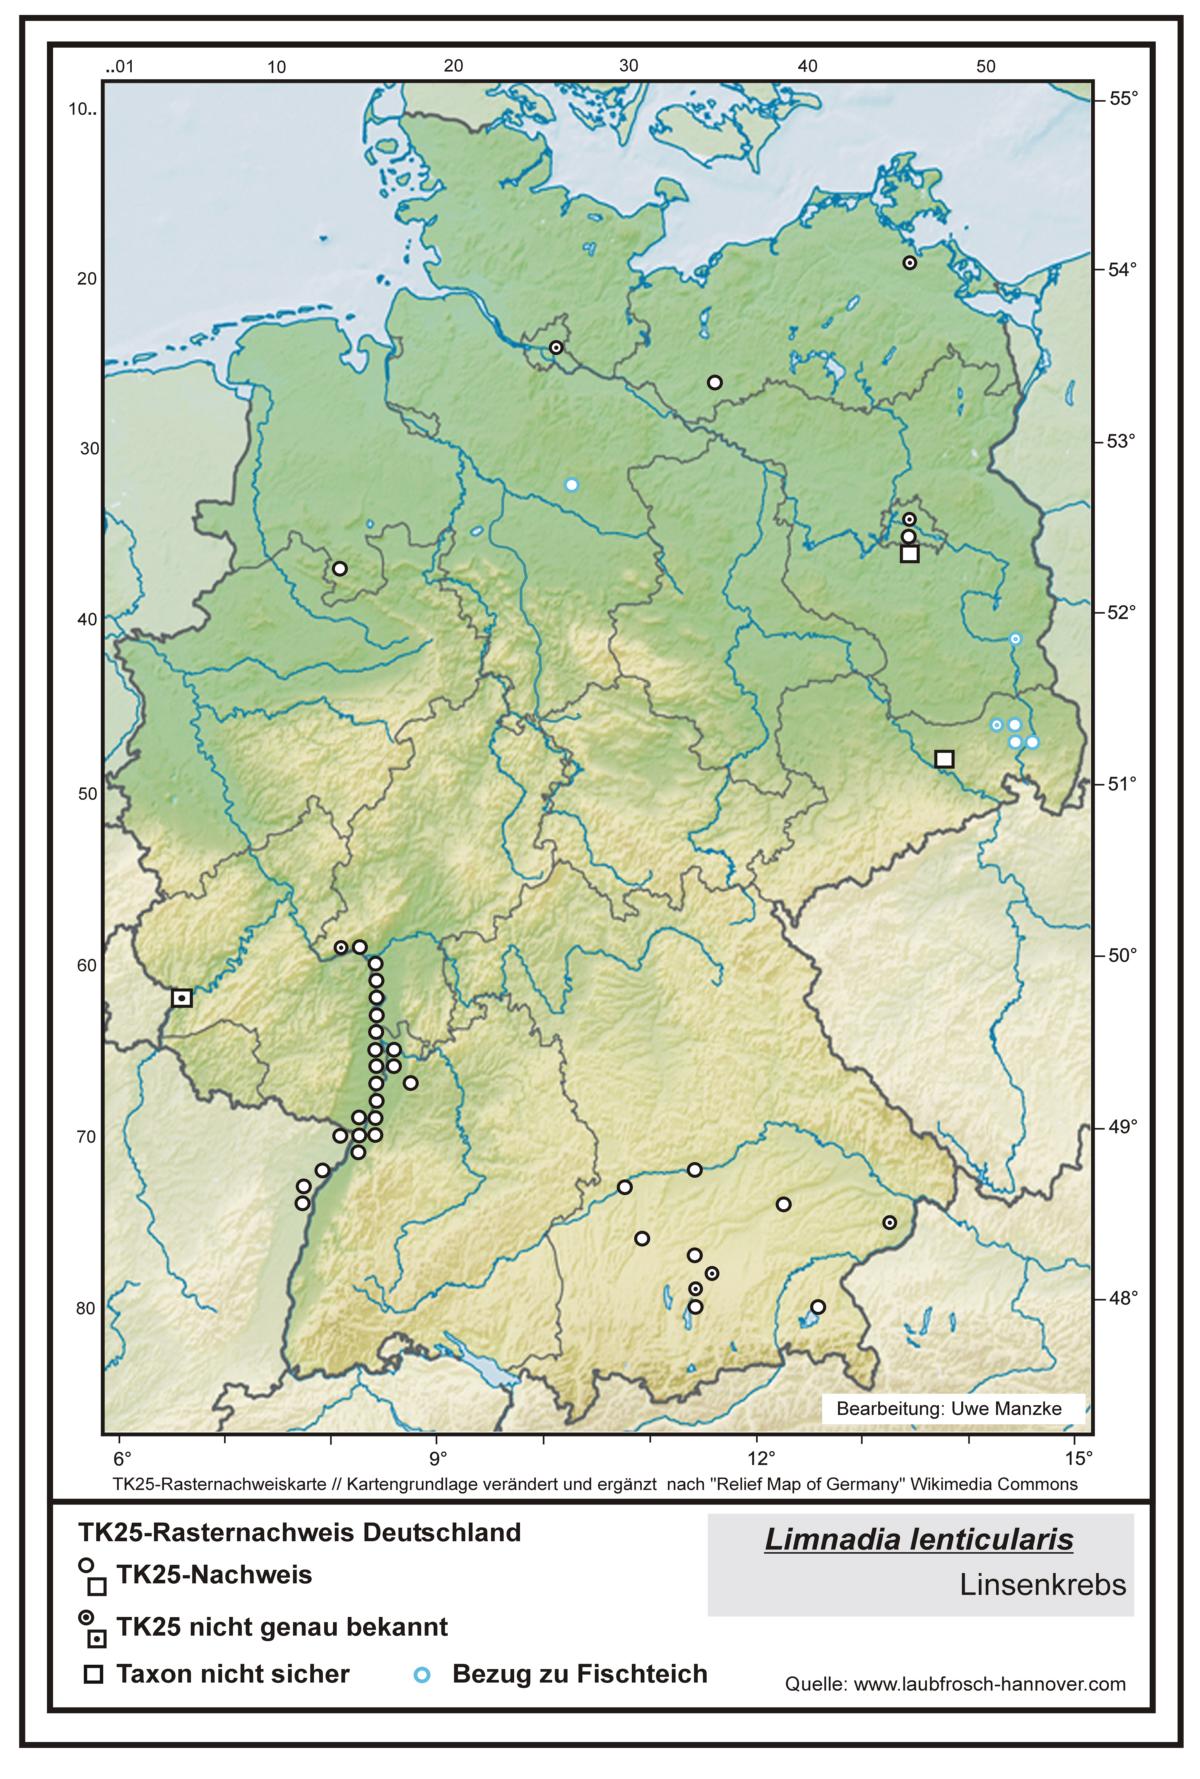 Limnadia lenticularis TK25-Rasternachweiskarte Deutschland, Bearbeitung Uwe Manzke; Kartengrundlage: verändert n. Relief Map of Germany Wikimedia Commons https://commons.wikimedia.org/wiki/File:Relief_Map_of_Germany.svg